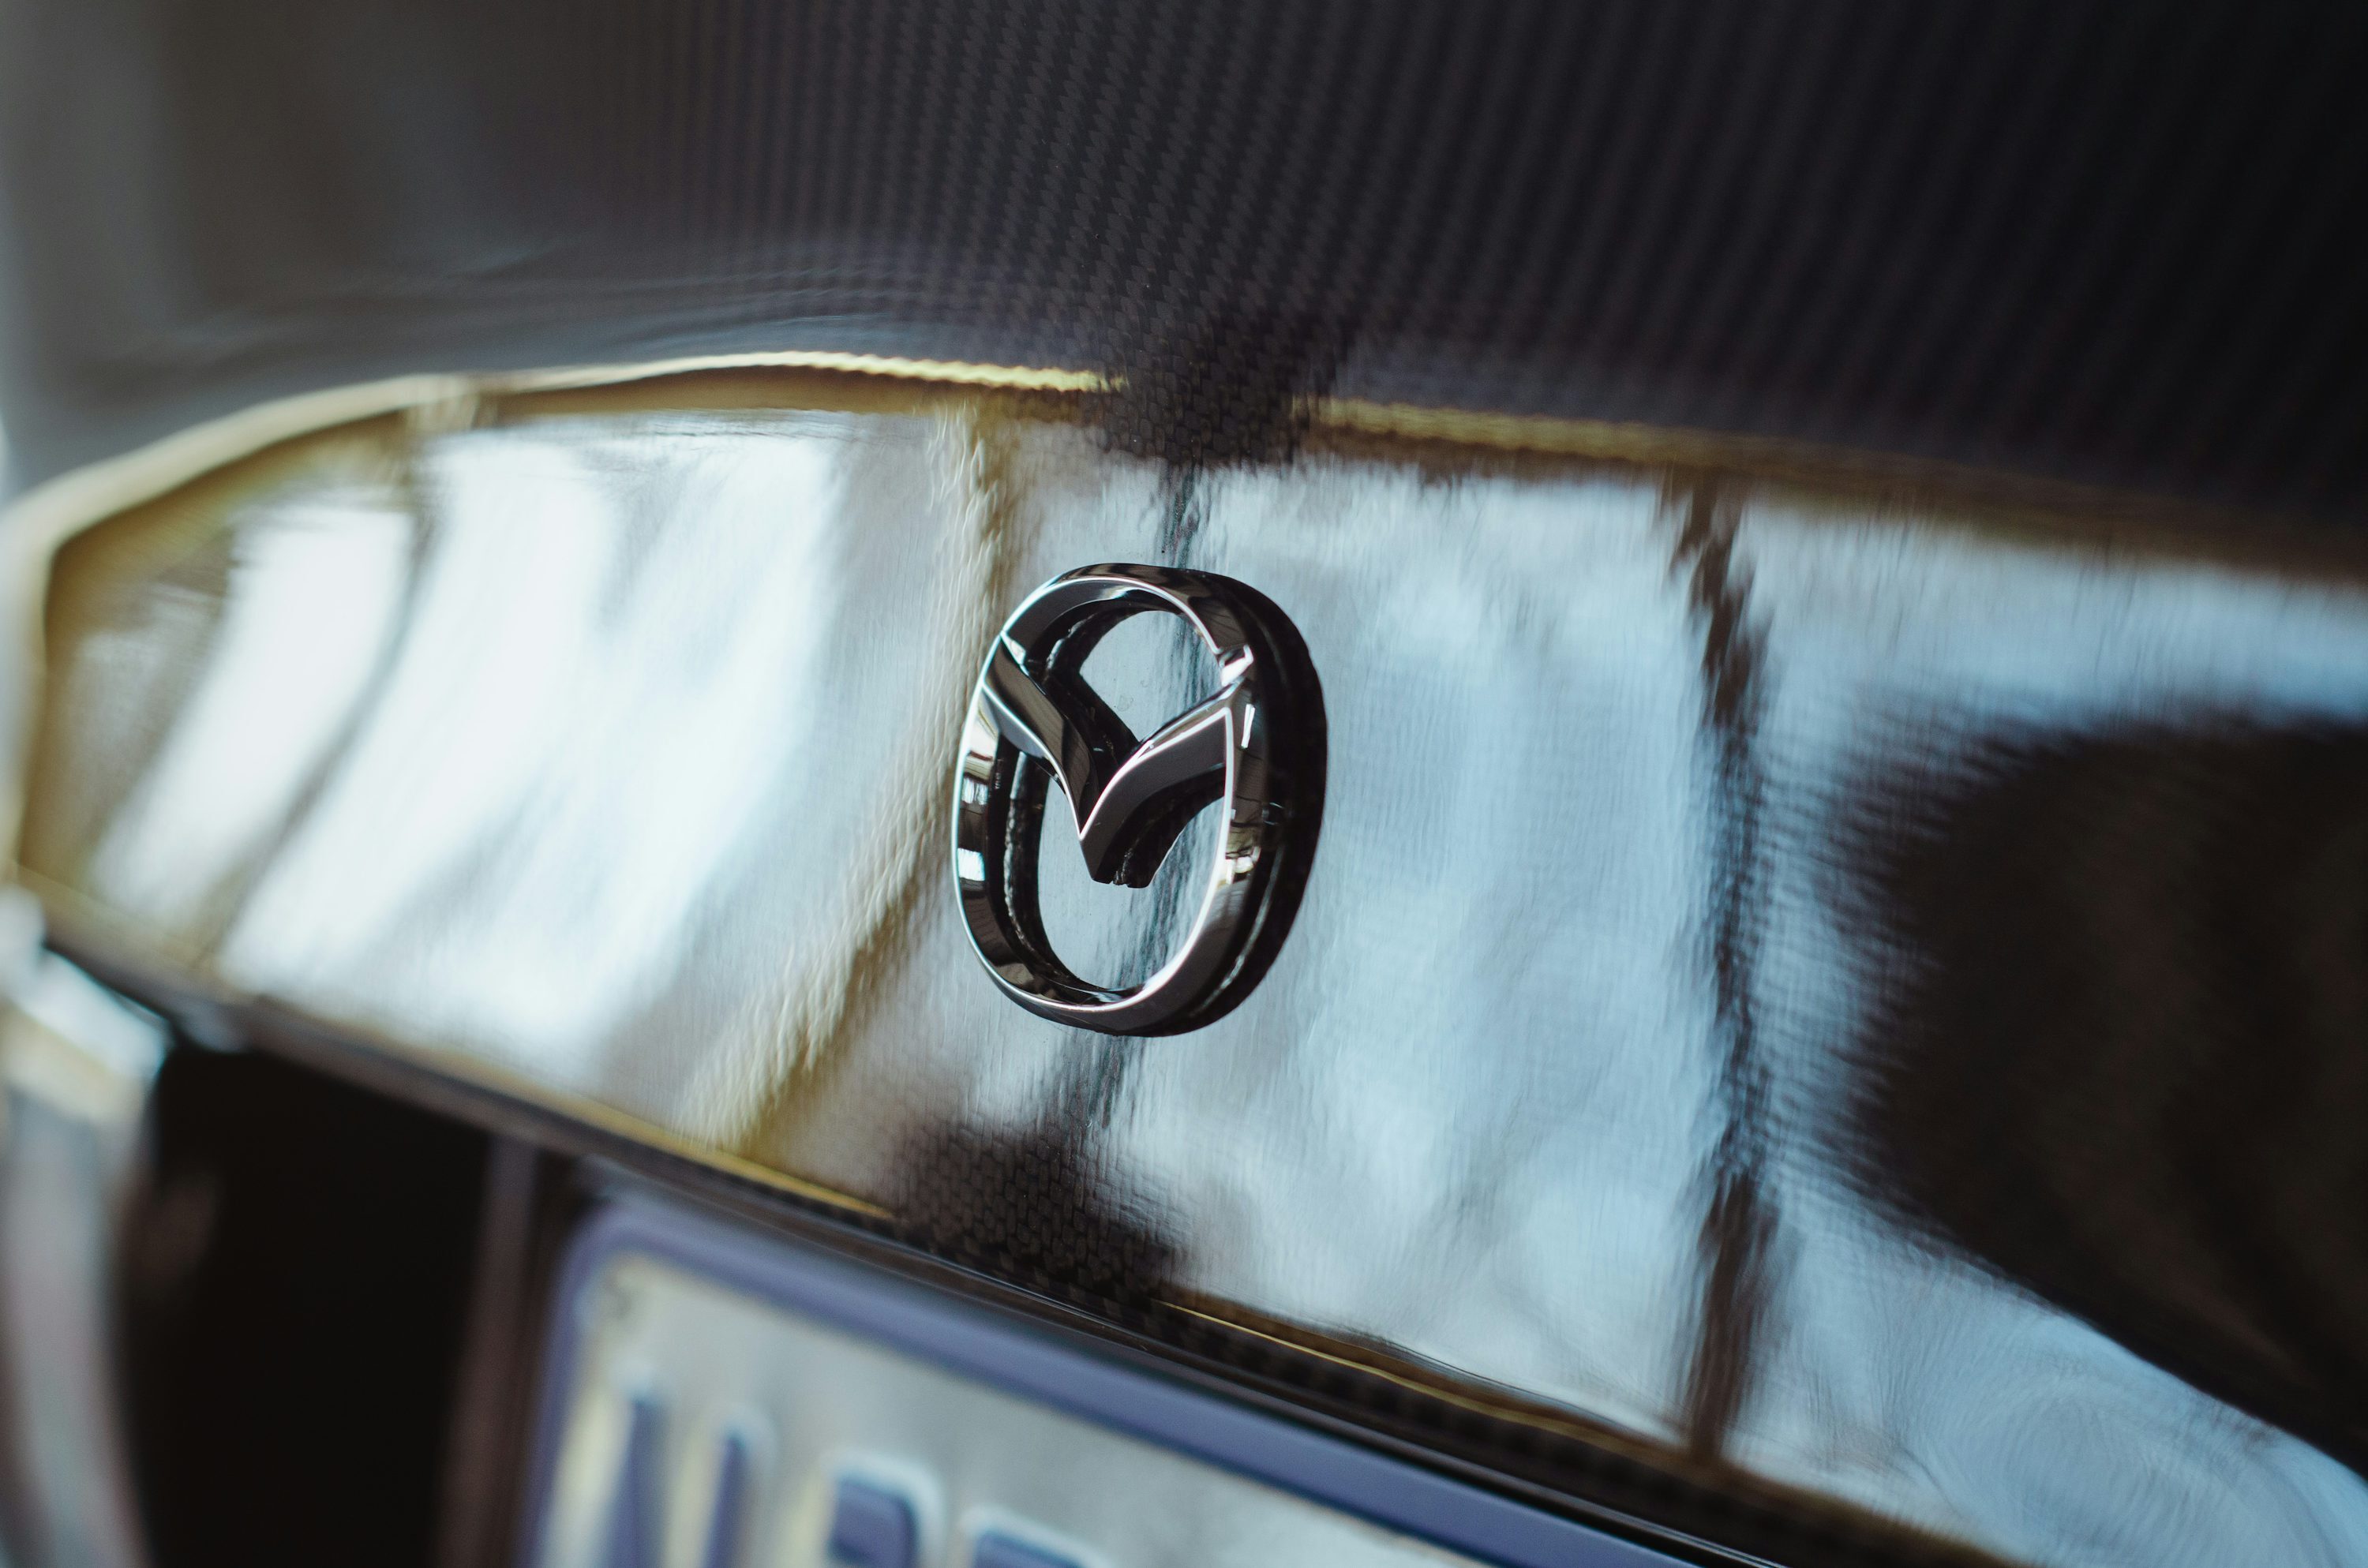 Японская автомобильная марка Mazda зарегистрировала новый логотип